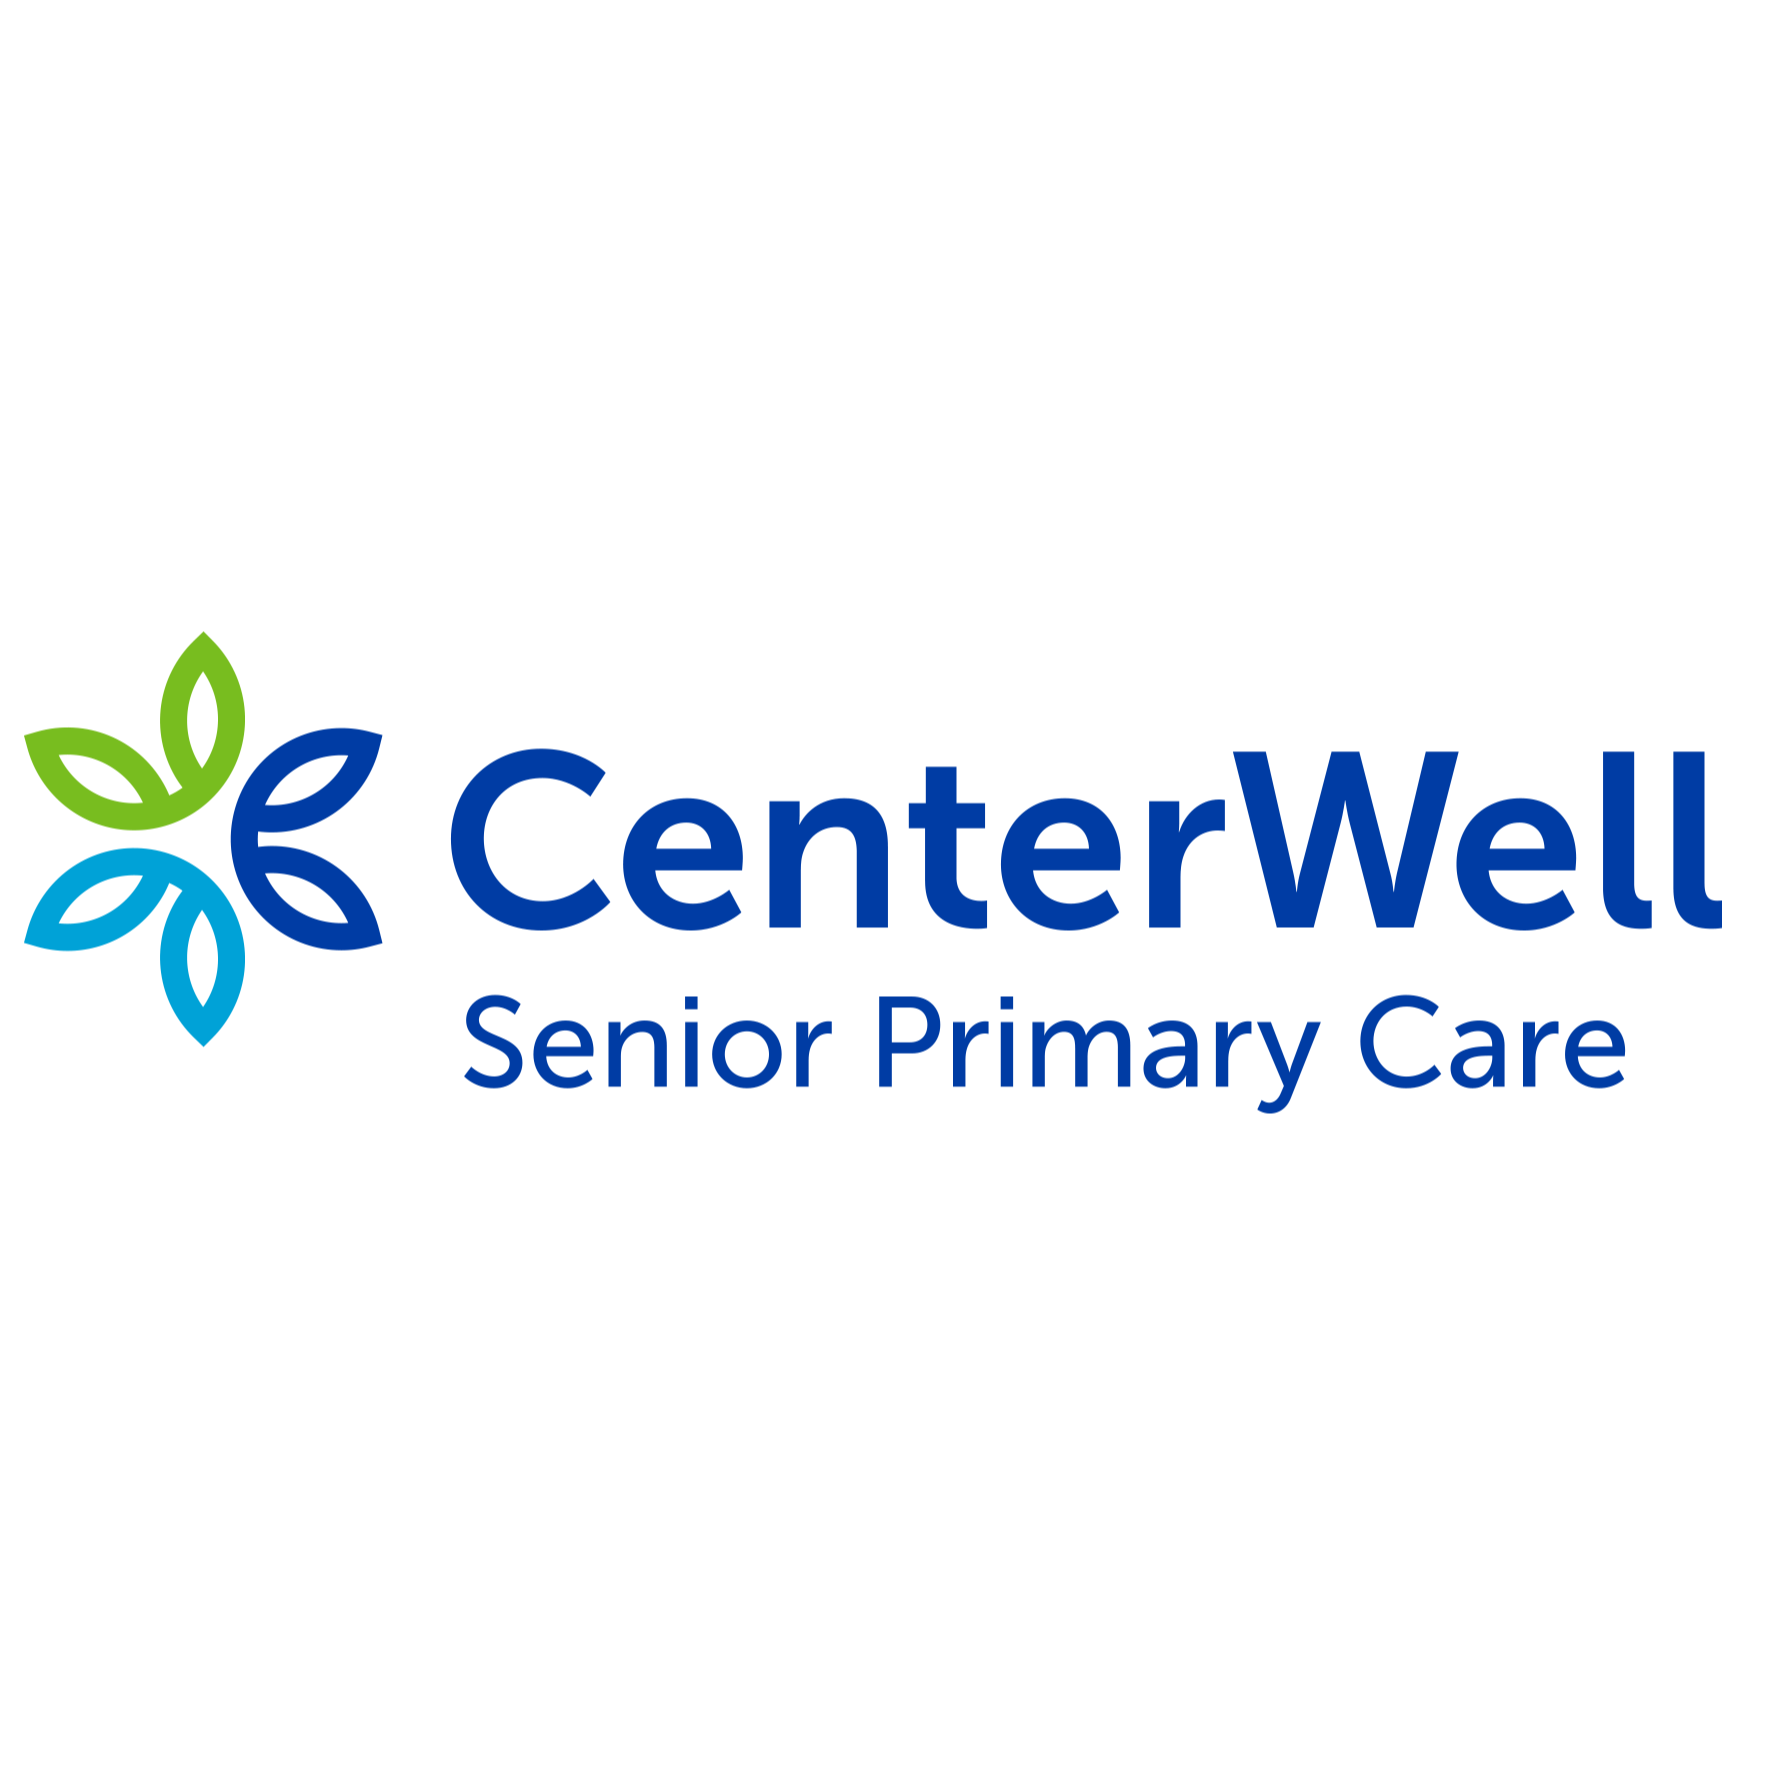 CenterWell Senior Primary Care